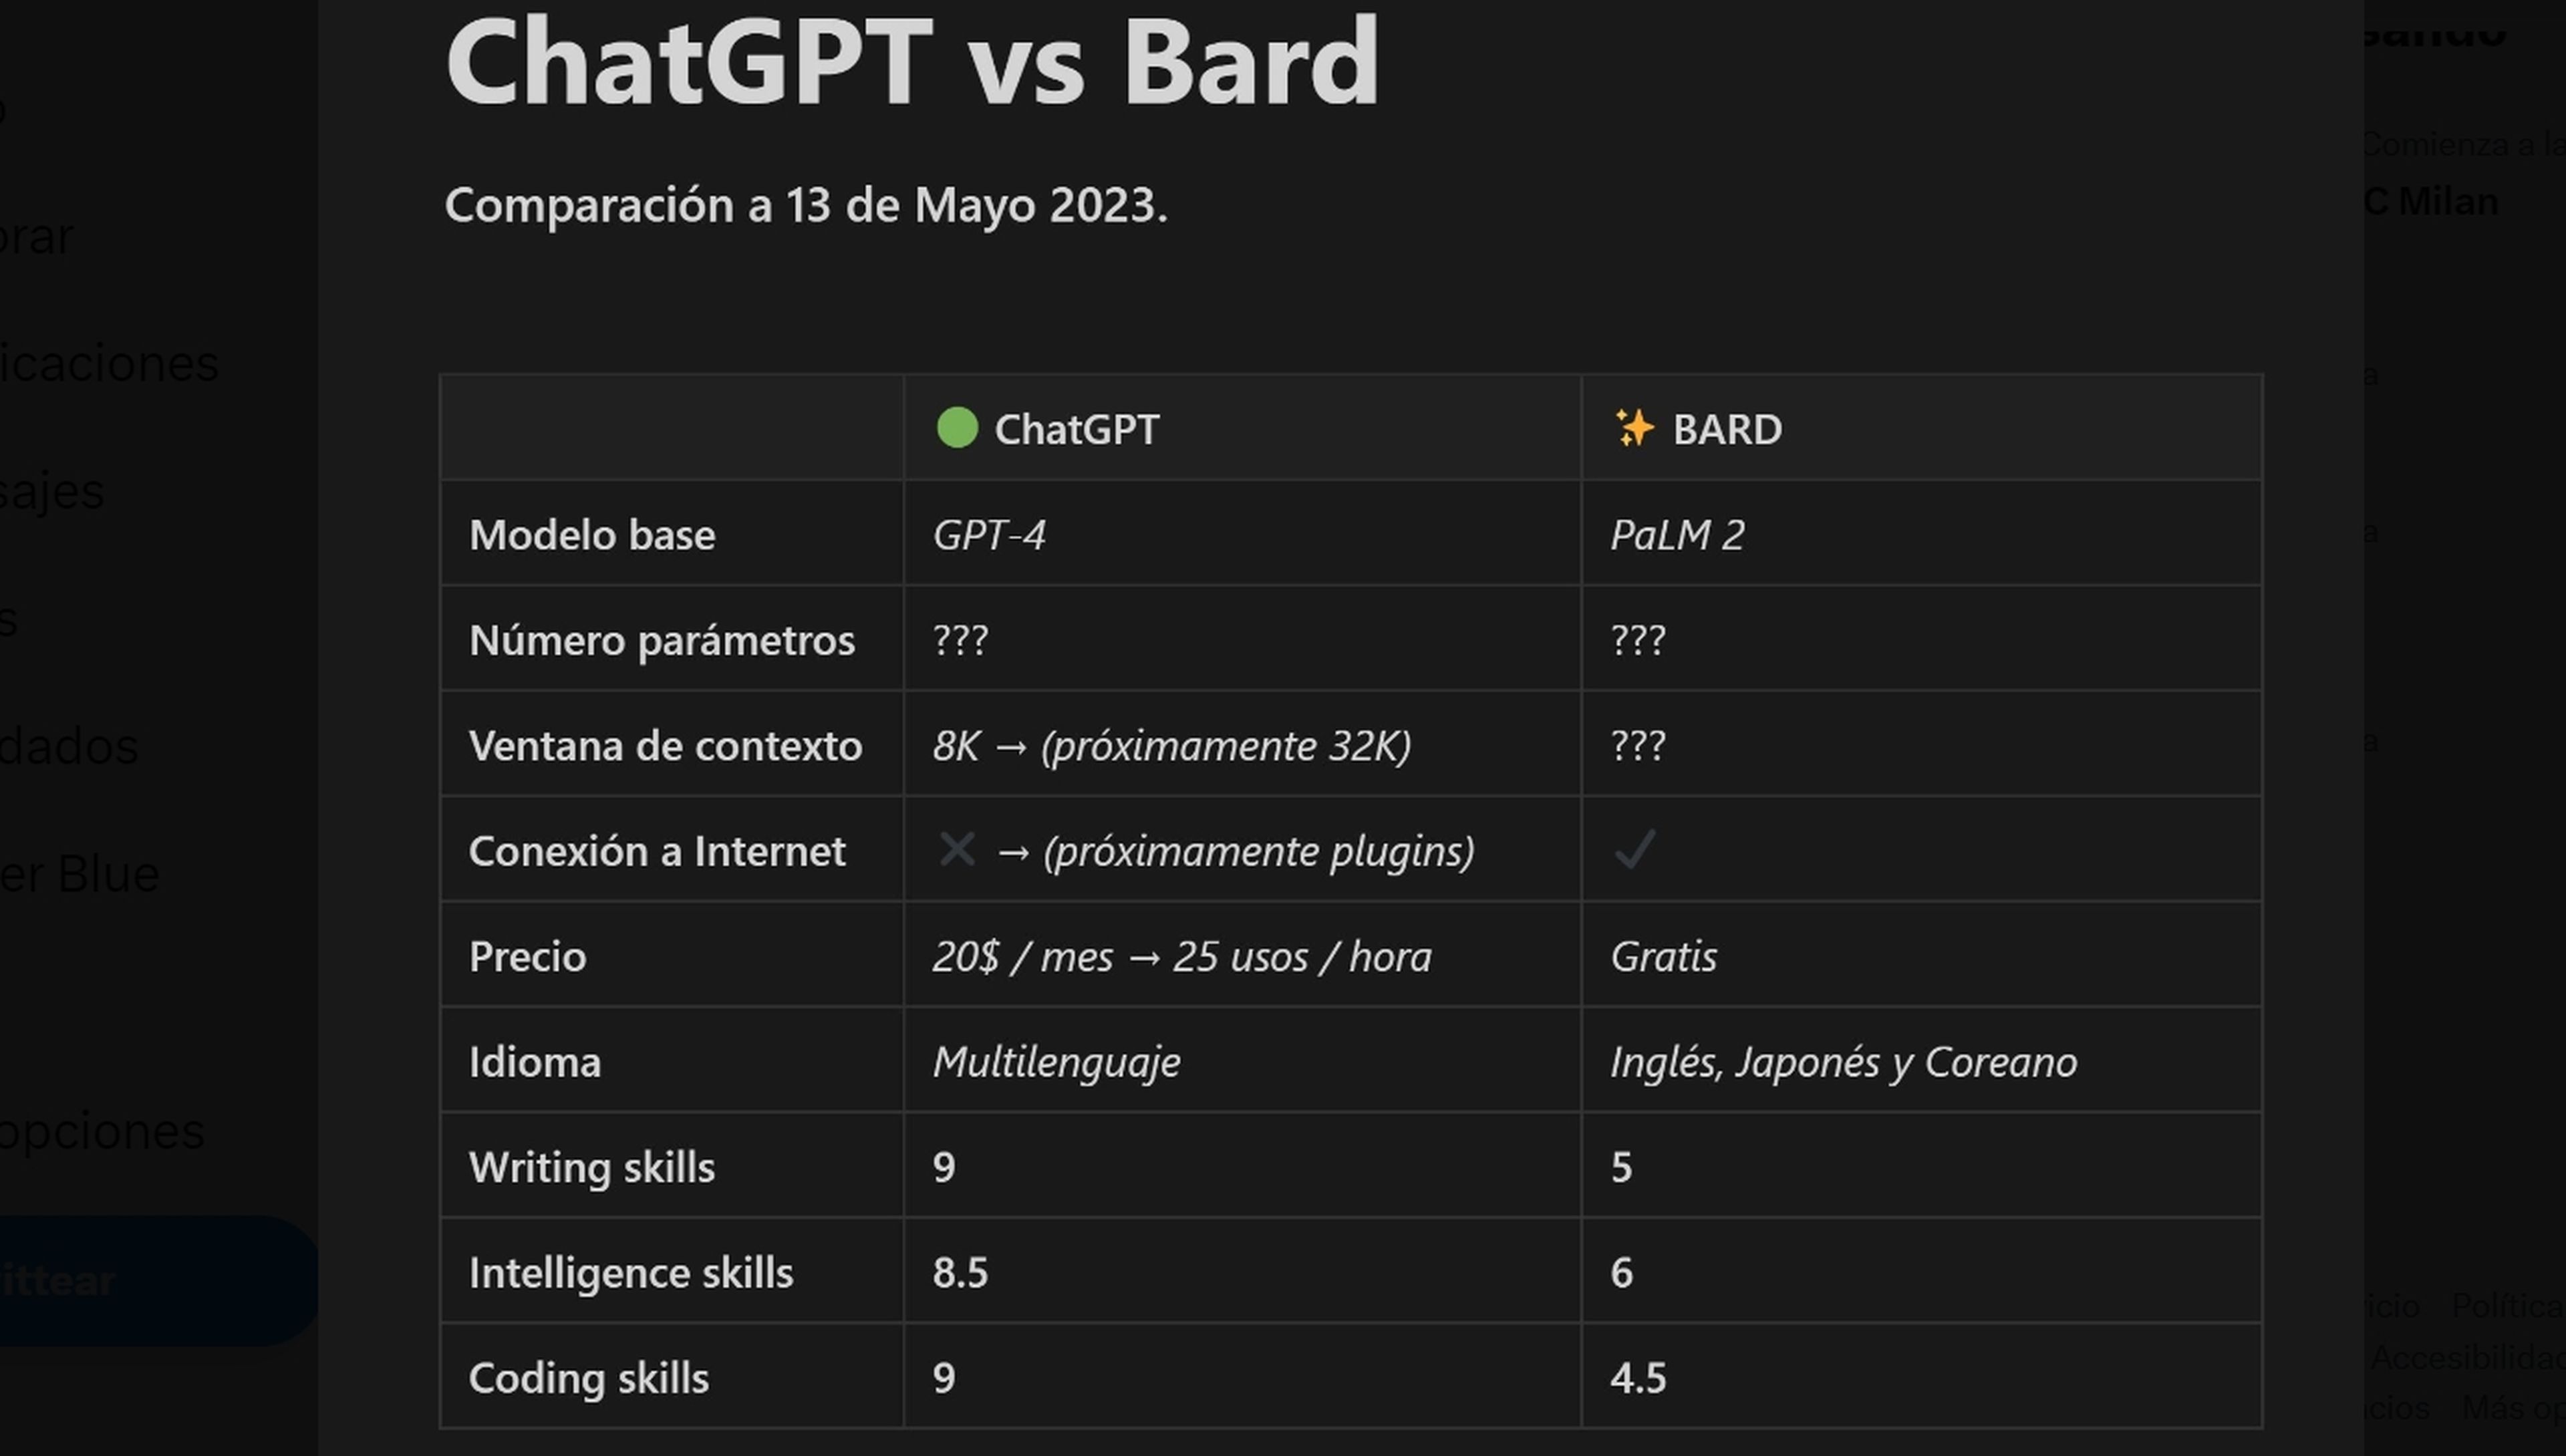 Resumen diferencias ChatGPT y Bard realizado por Carlos Santana, @DotCSV.